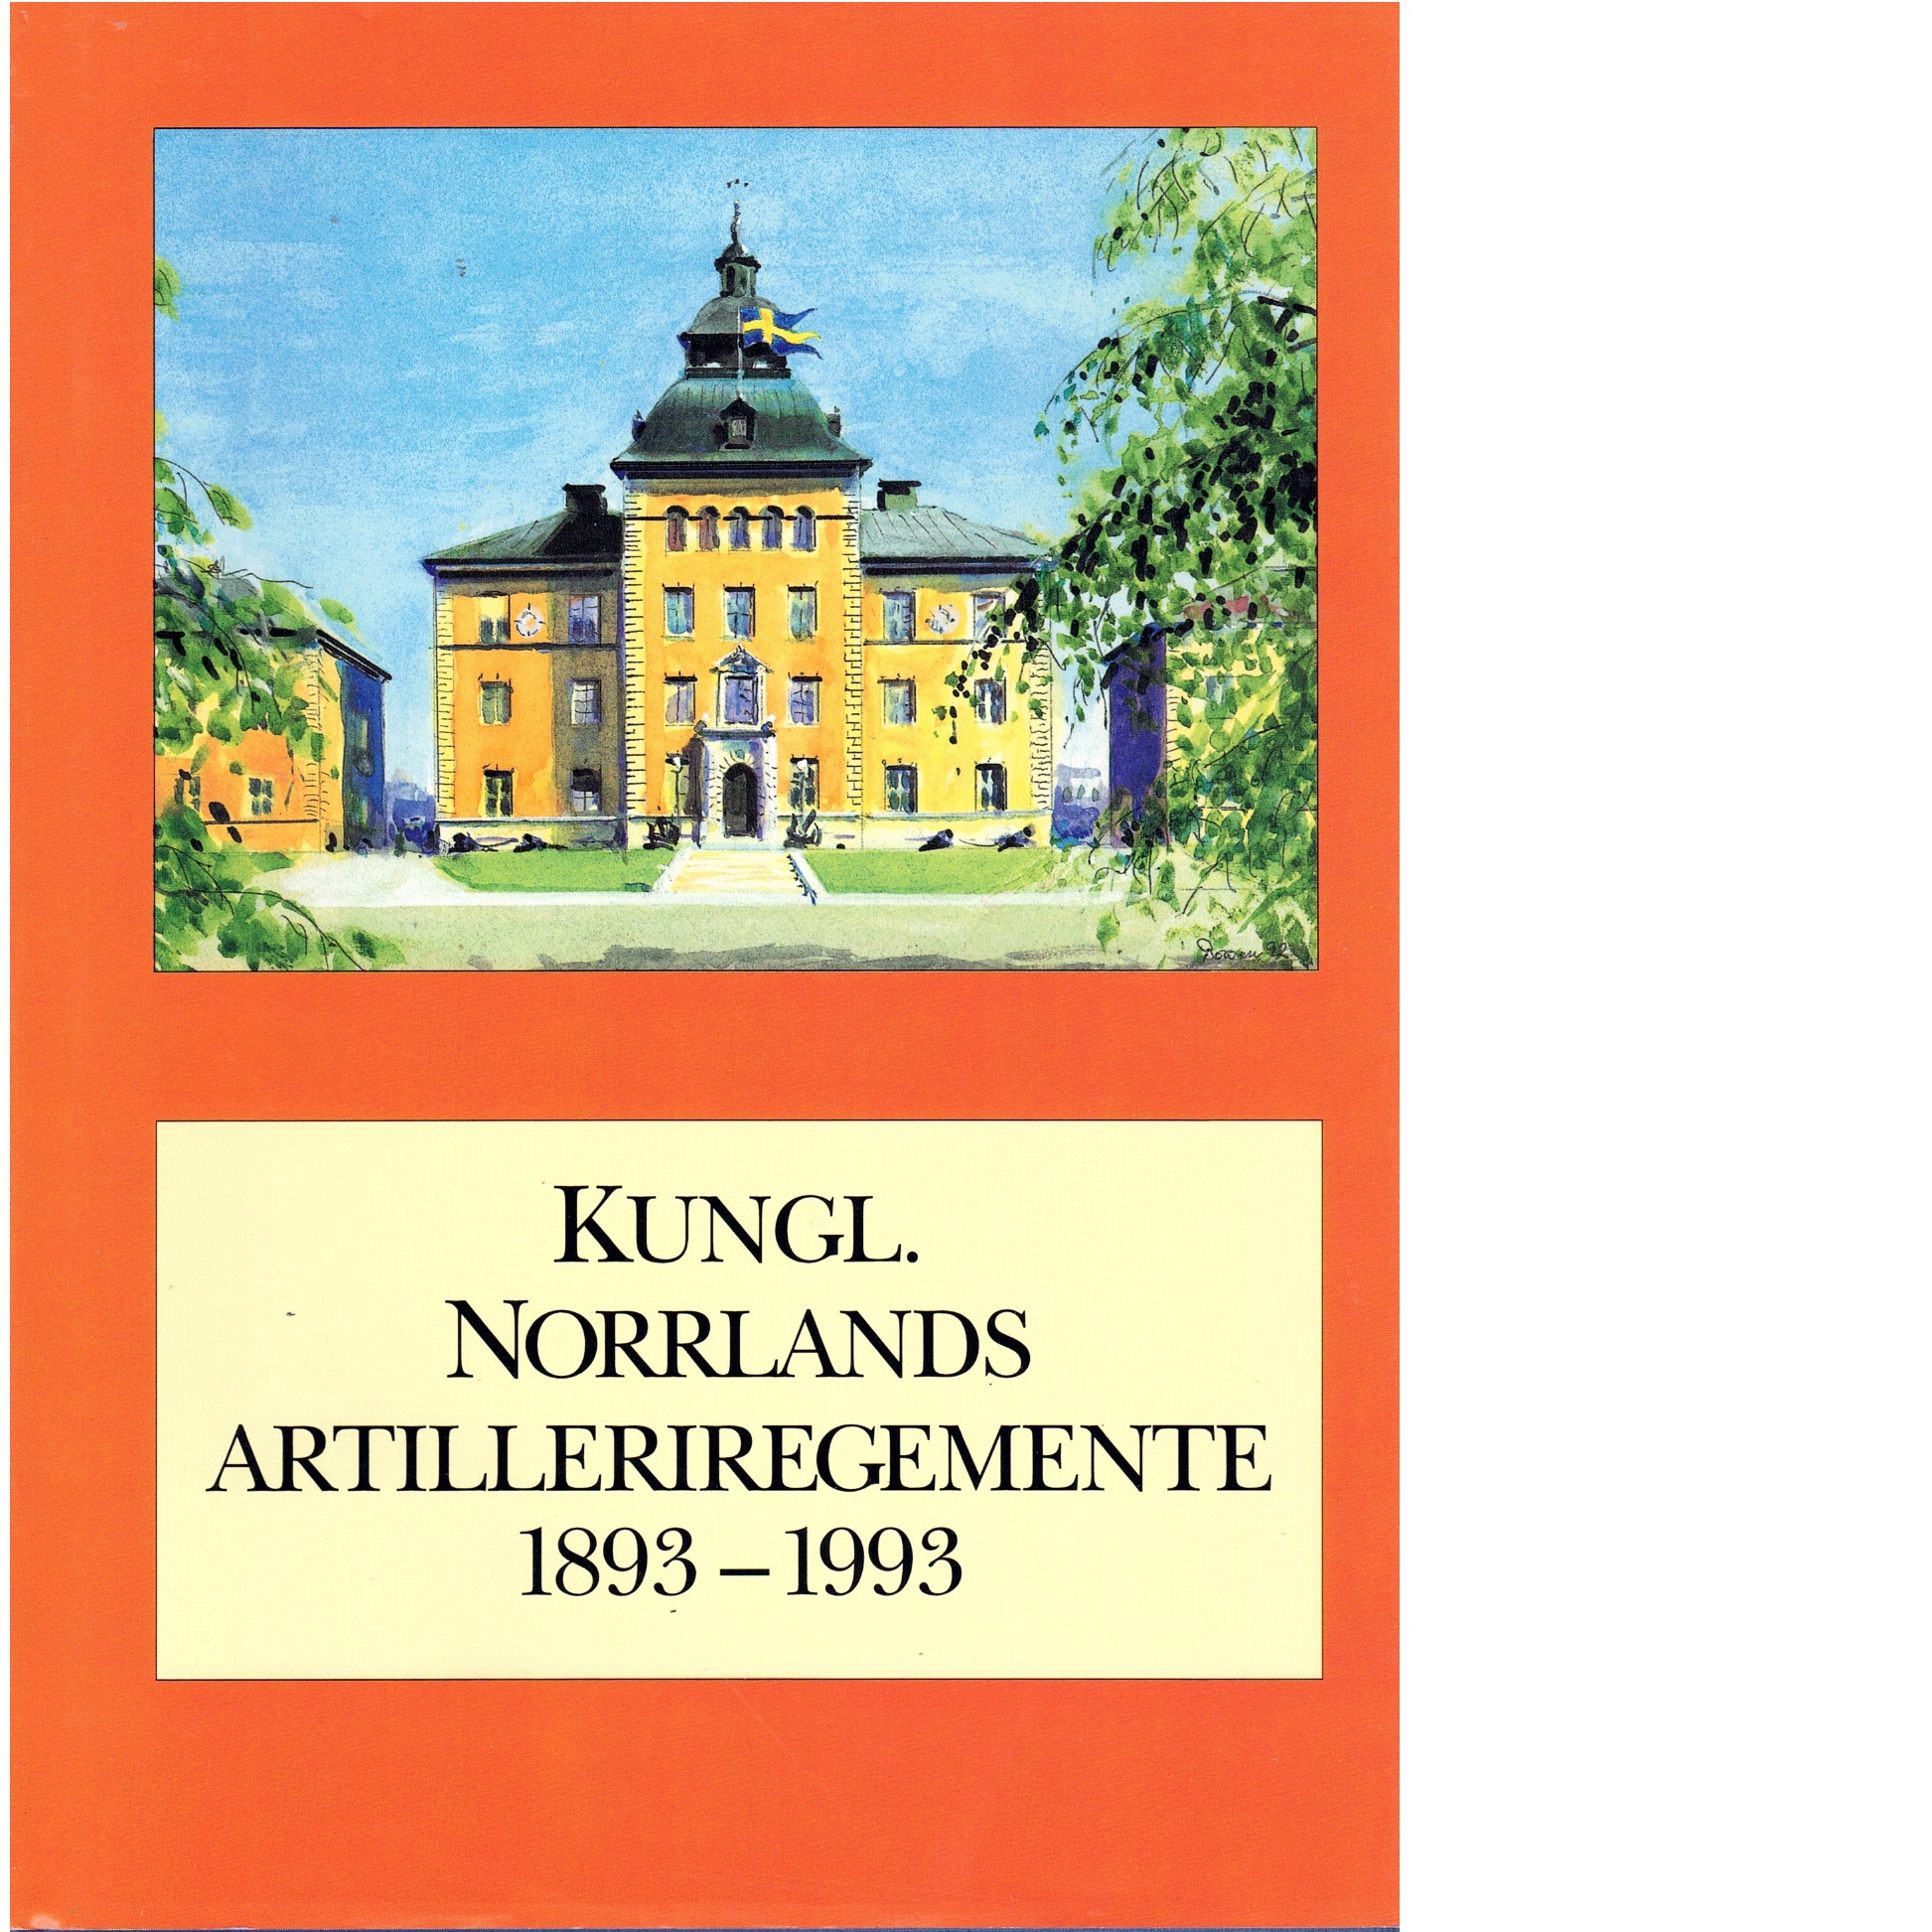 Kungl. Norrlands artilleriregemente 1893-1993 : beskrivning av regementet och vad som hänt där under dess första sekel - Red.